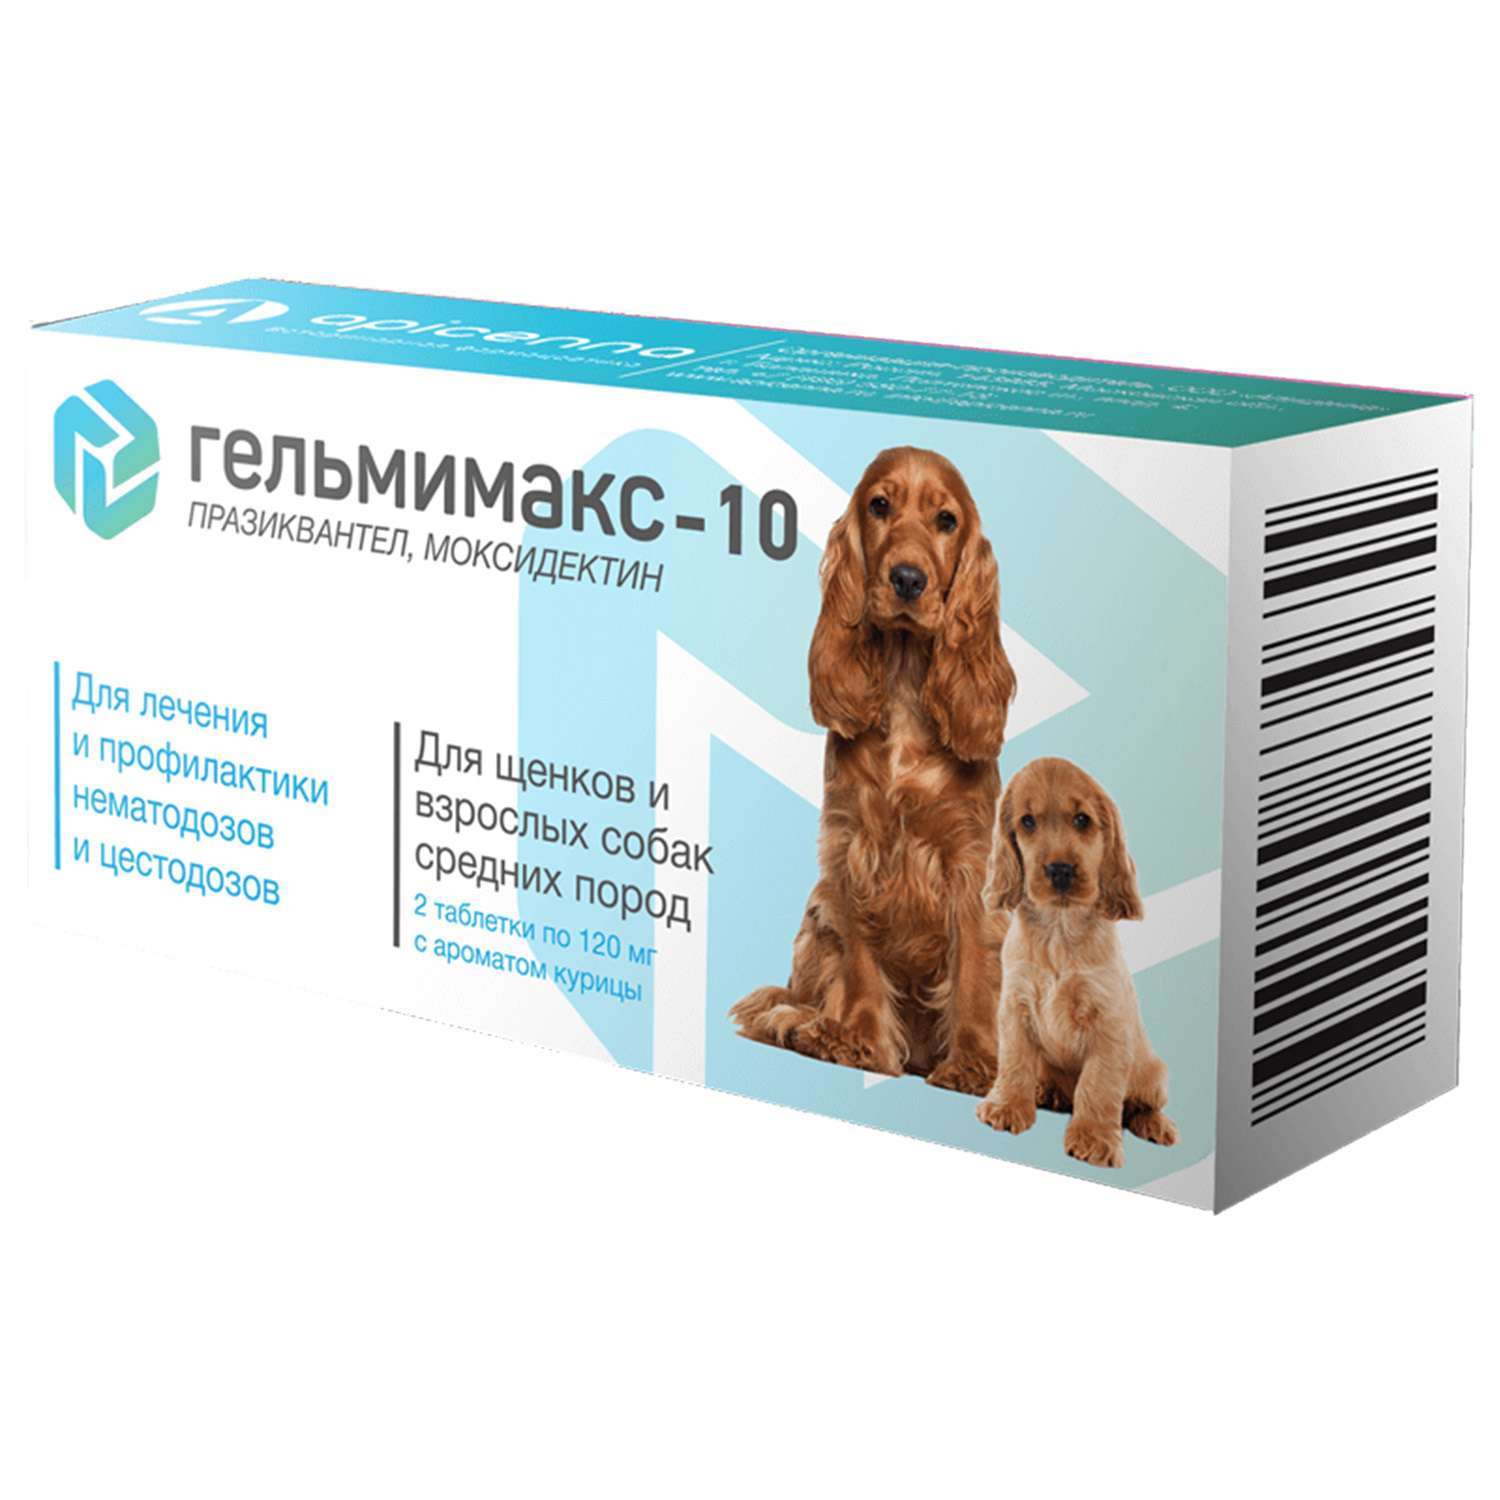 Препарат противопаразитарный для щенков и собак Apicenna Гельмимакс-10 средних пород 120мг 2таблетки - фото 1